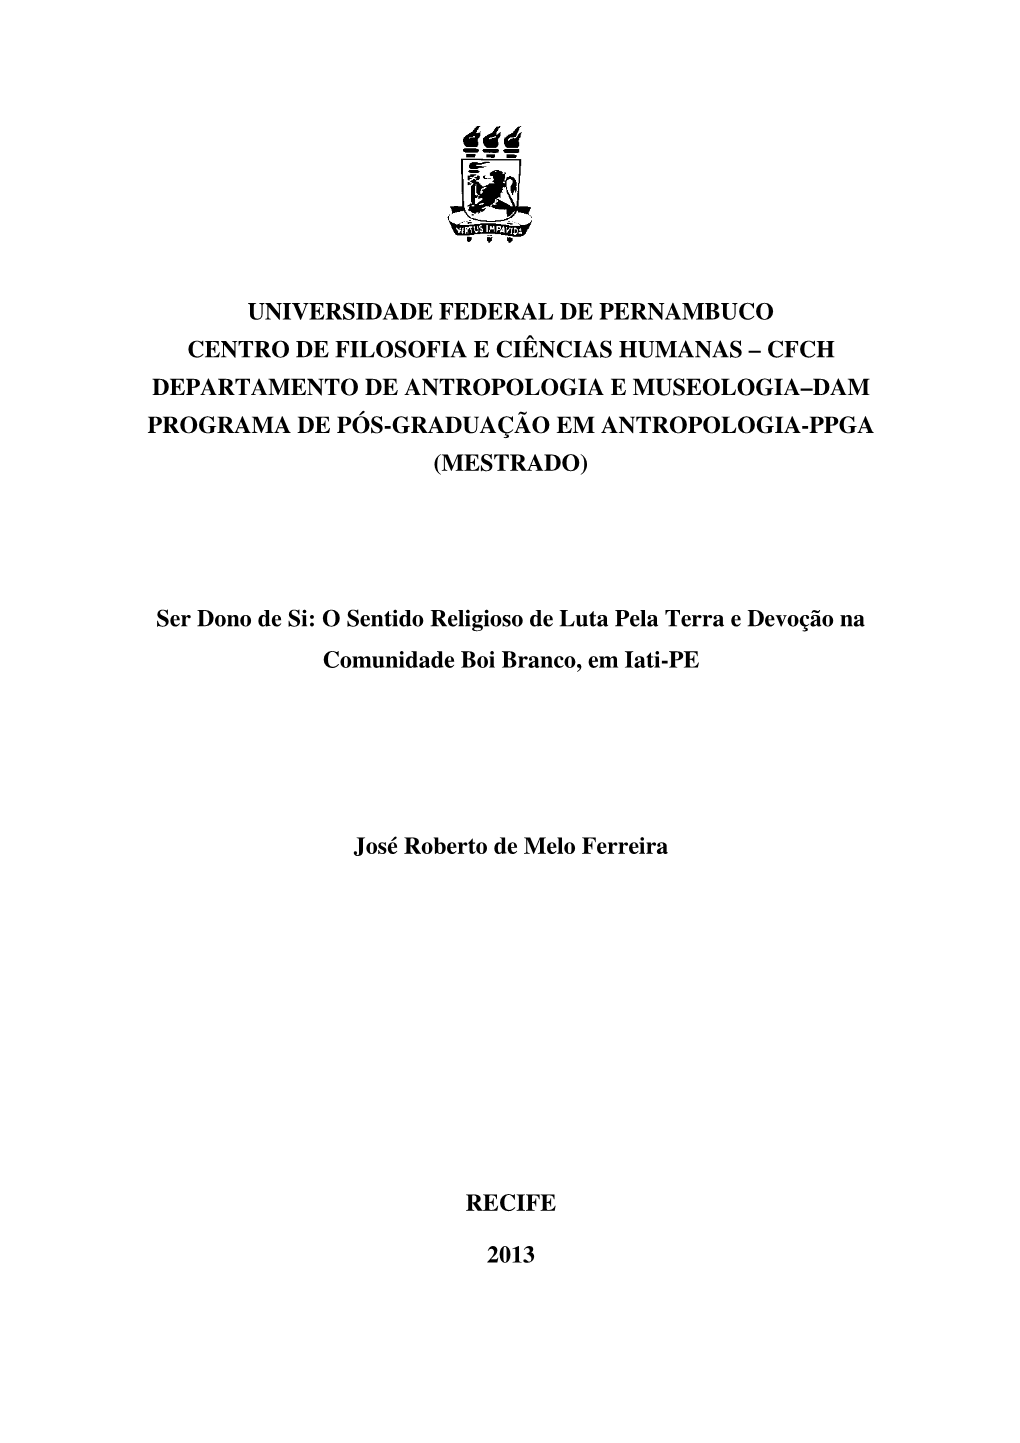 Dissertação José Roberto De Melo Ferreira.Pdf